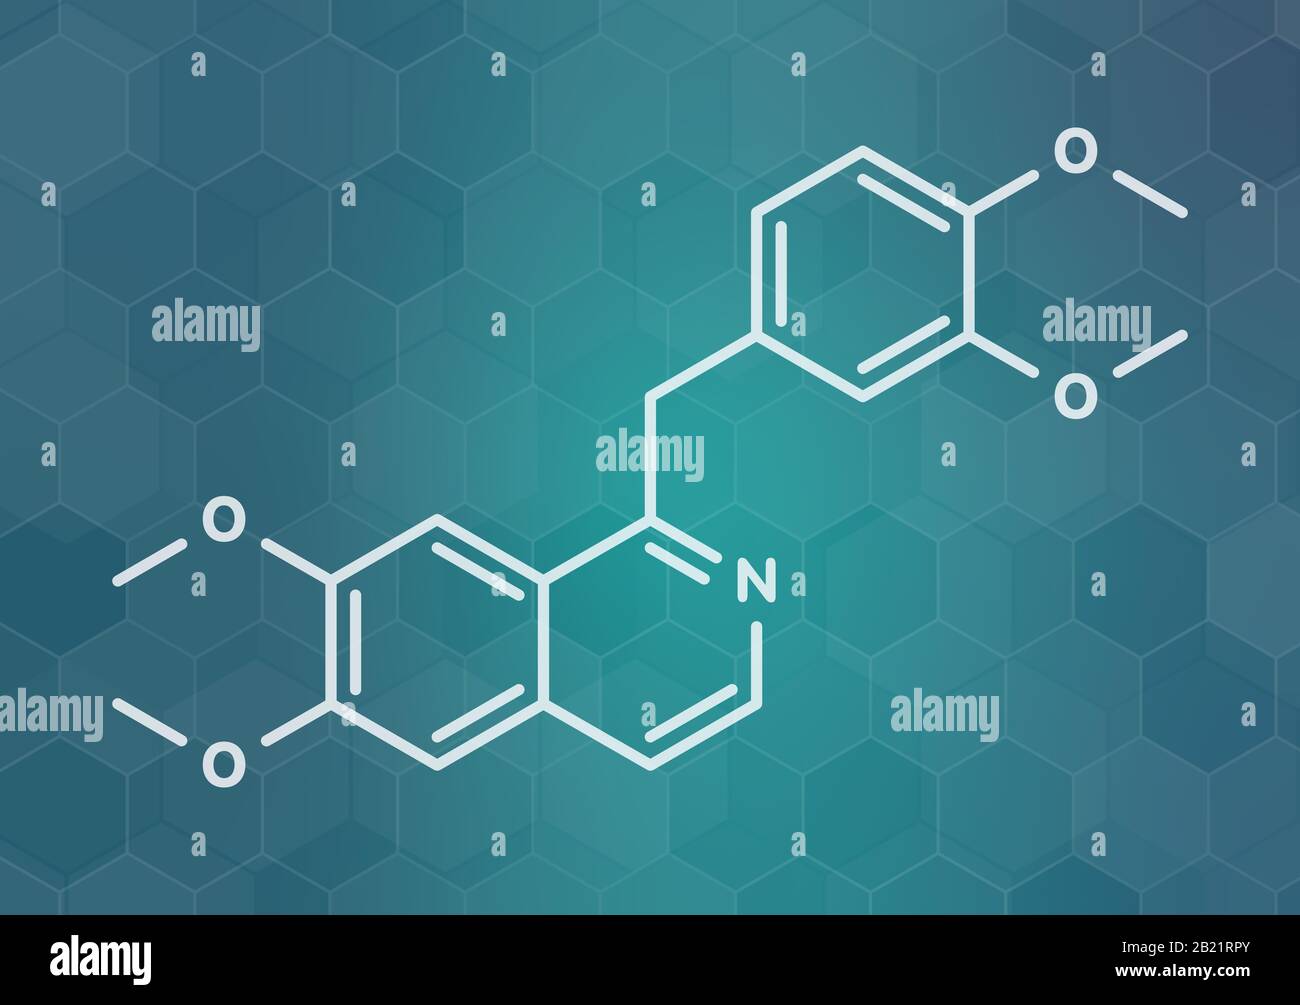 Papaverine opium alkaloid molecule, illustration Stock Photo